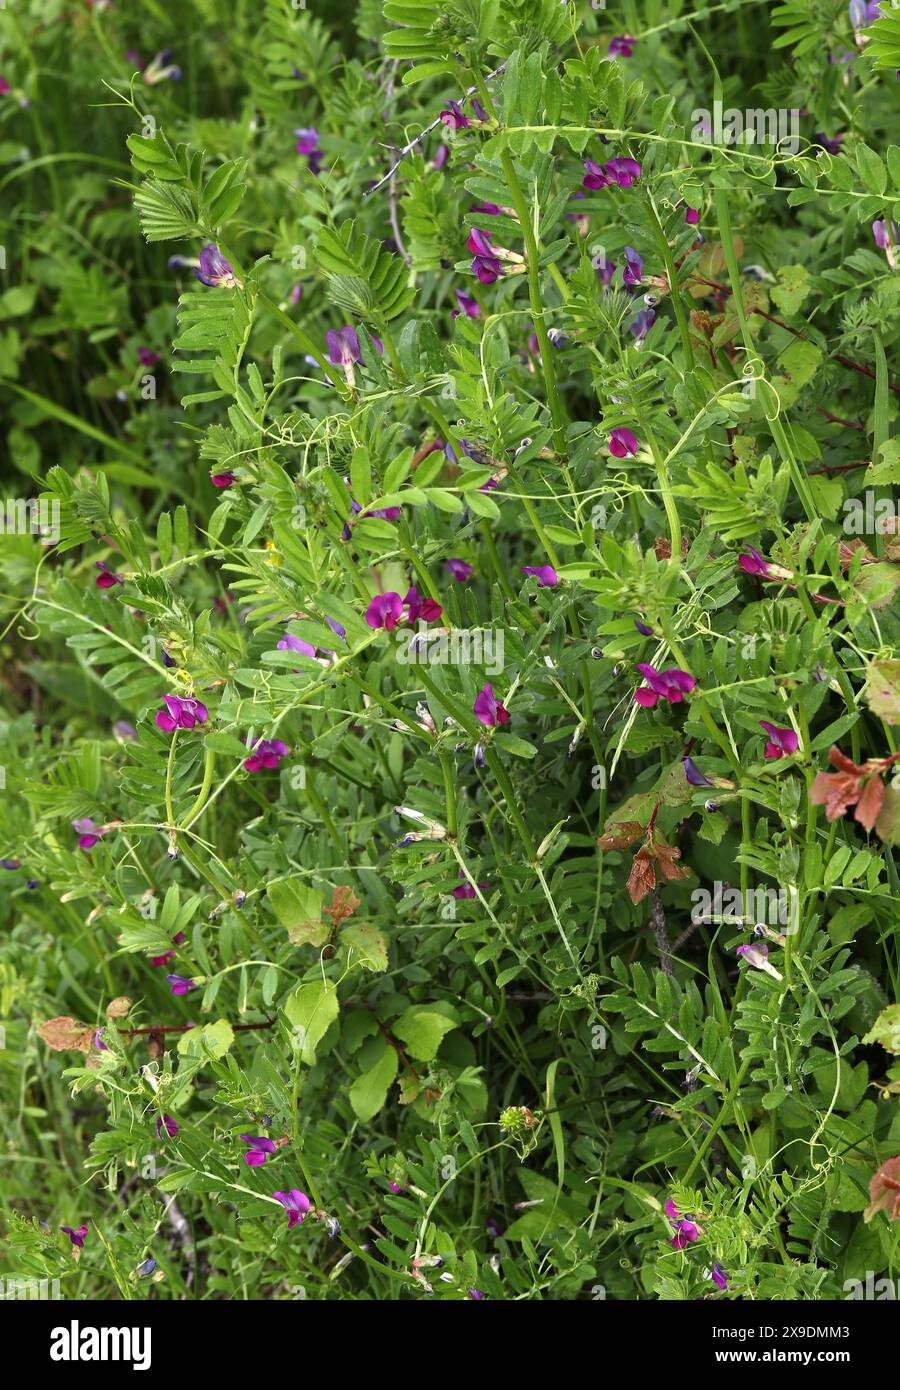 Common Vetch, Garden Vetch, Tare or simply Vetch, Vicia sativa, Fabaceae. Vicia sativa, known as the common vetch, garden vetch, tare or simply vetch. Stock Photo